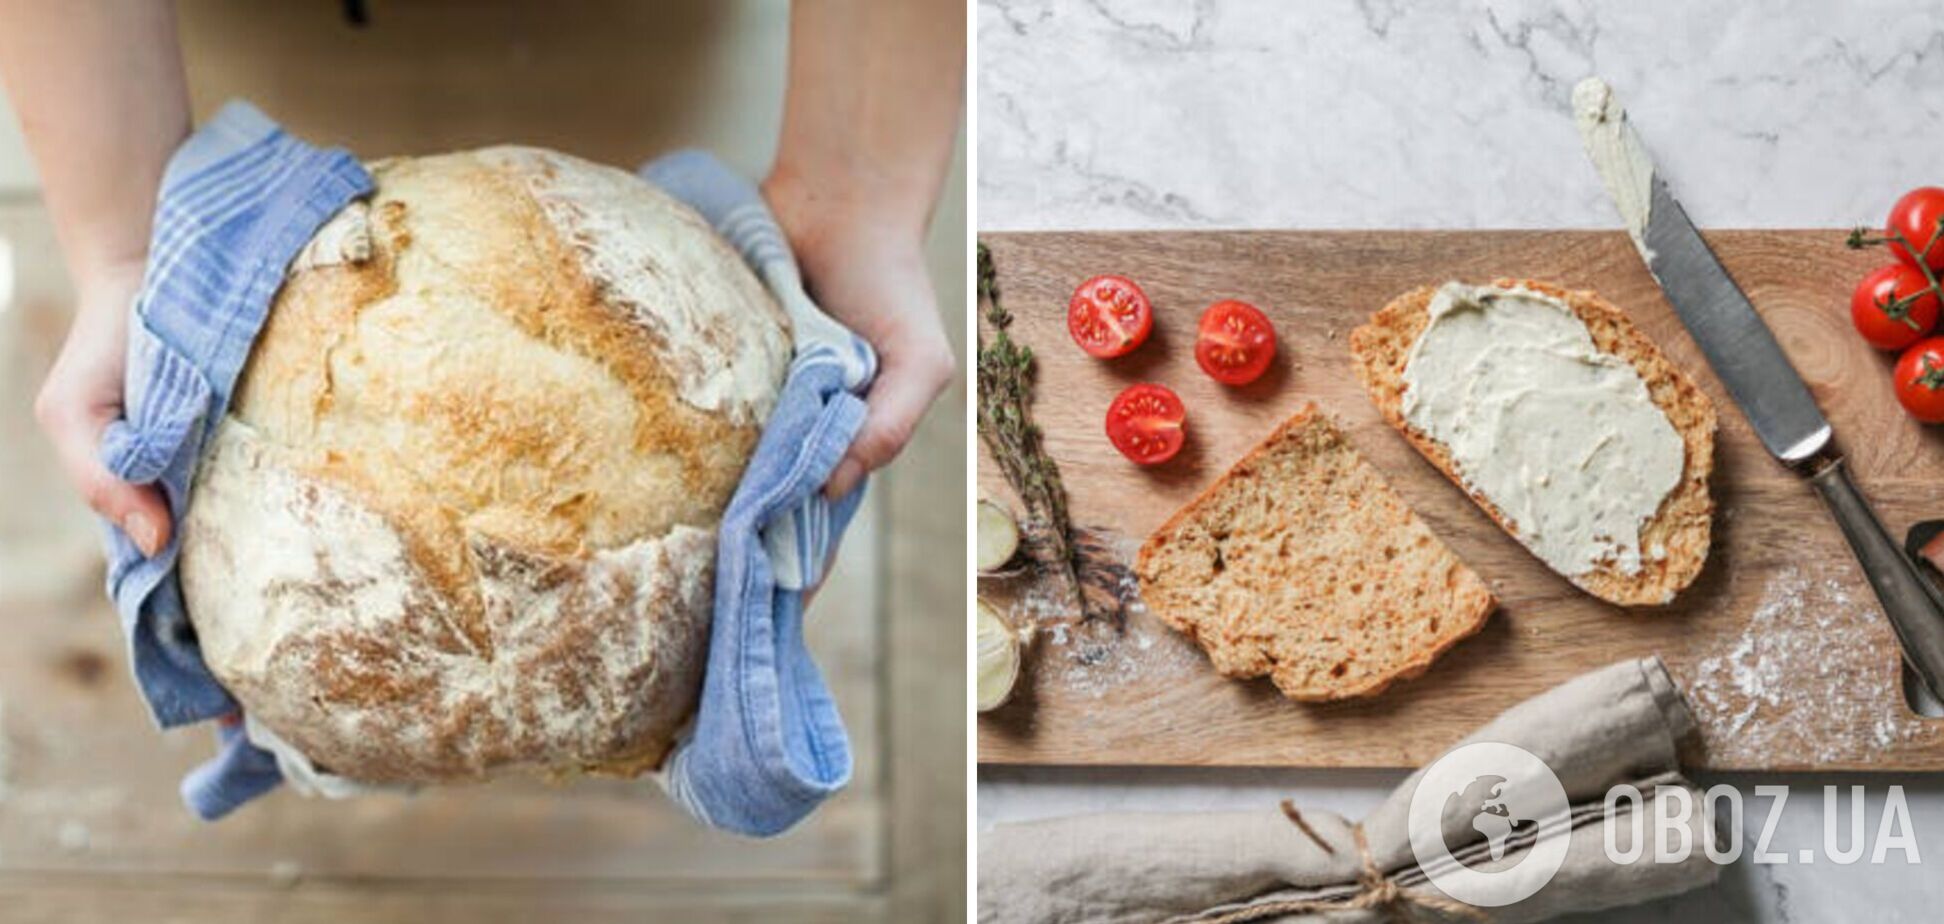 Хлеб, который не черствеет несколько дней: какие ингредиенты добавить в тесто